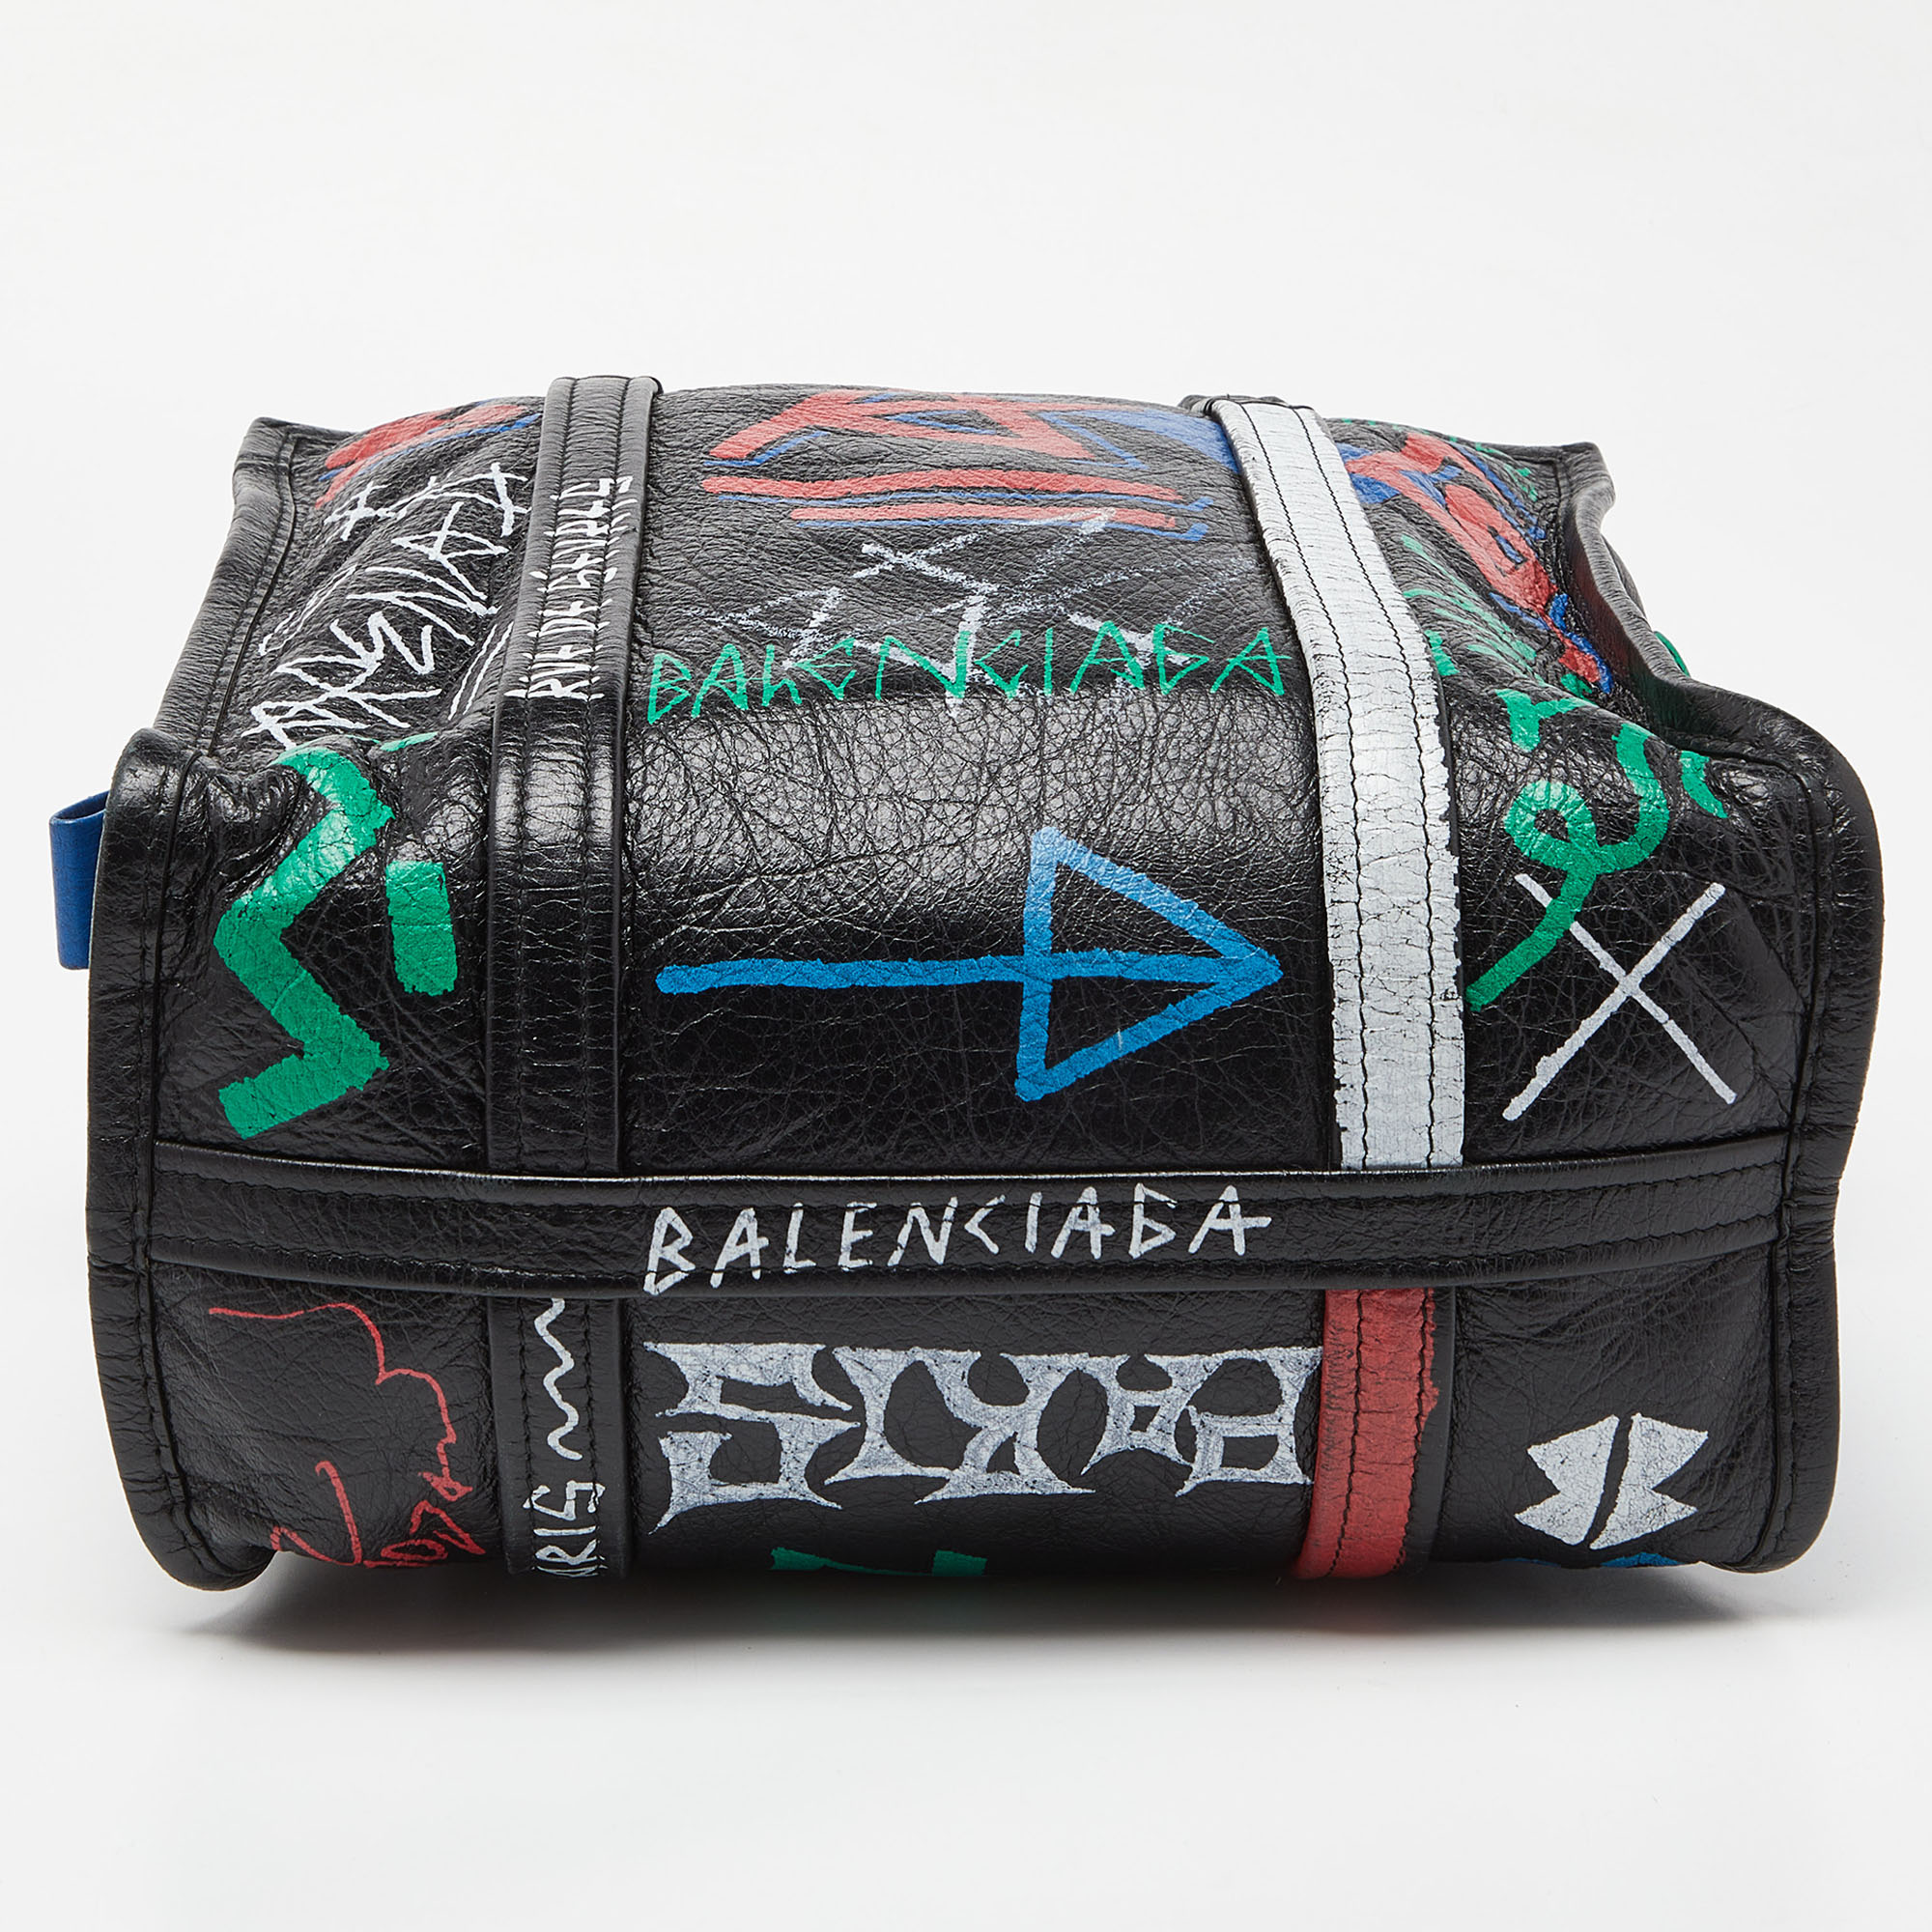 Balenciaga Multicolor Graffiti Leather Bazaar Tote